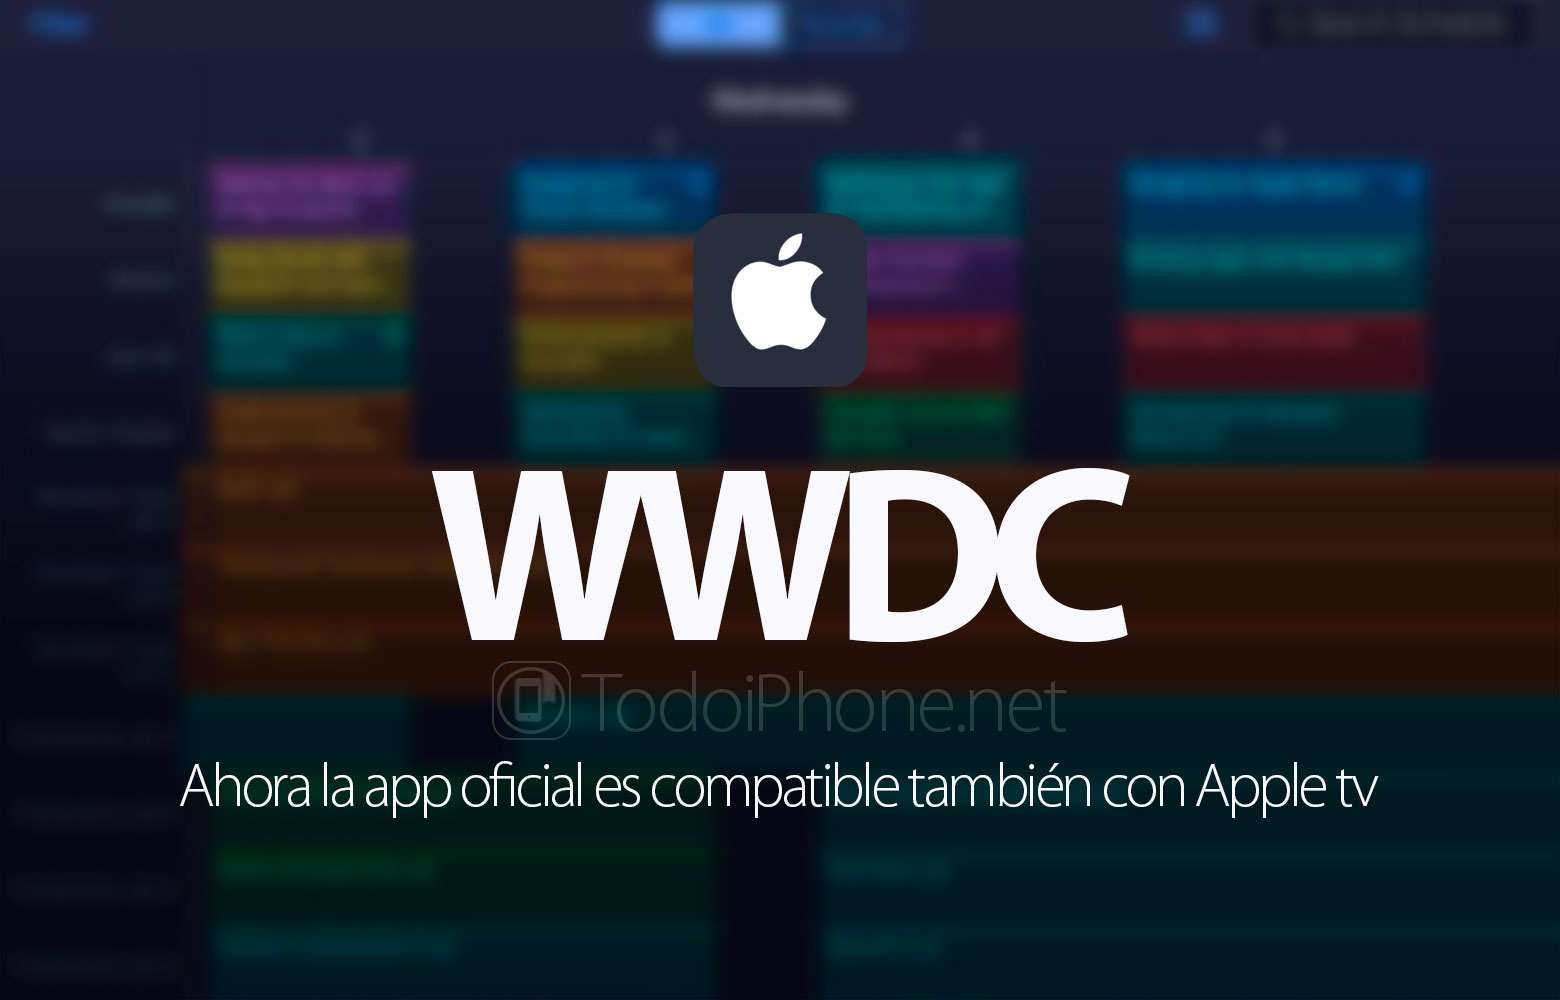 WWDC 2016 hiện hỗ trợ ứng dụng chính thức Apple TV 2